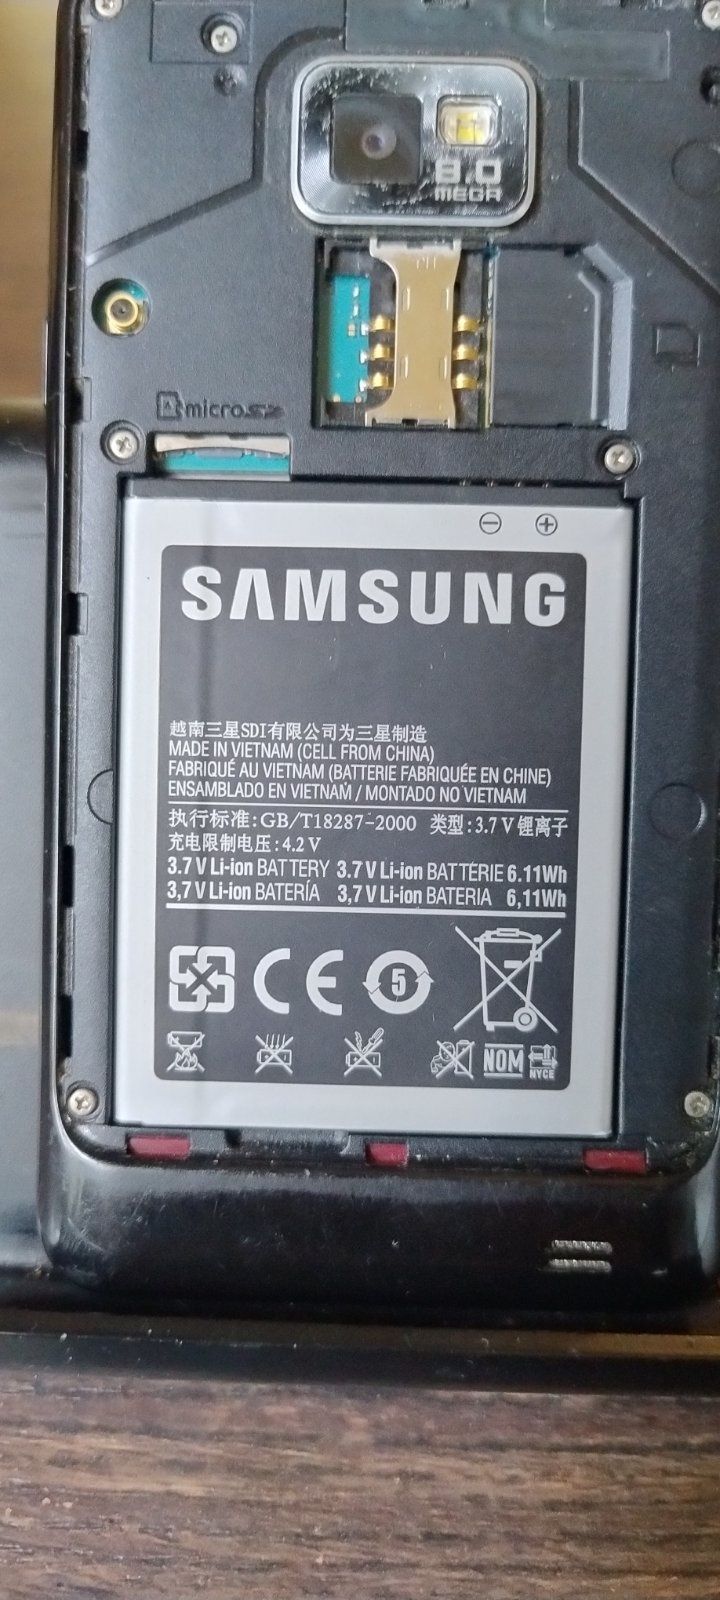 Смартфон Samsung galaxy gt-i9100